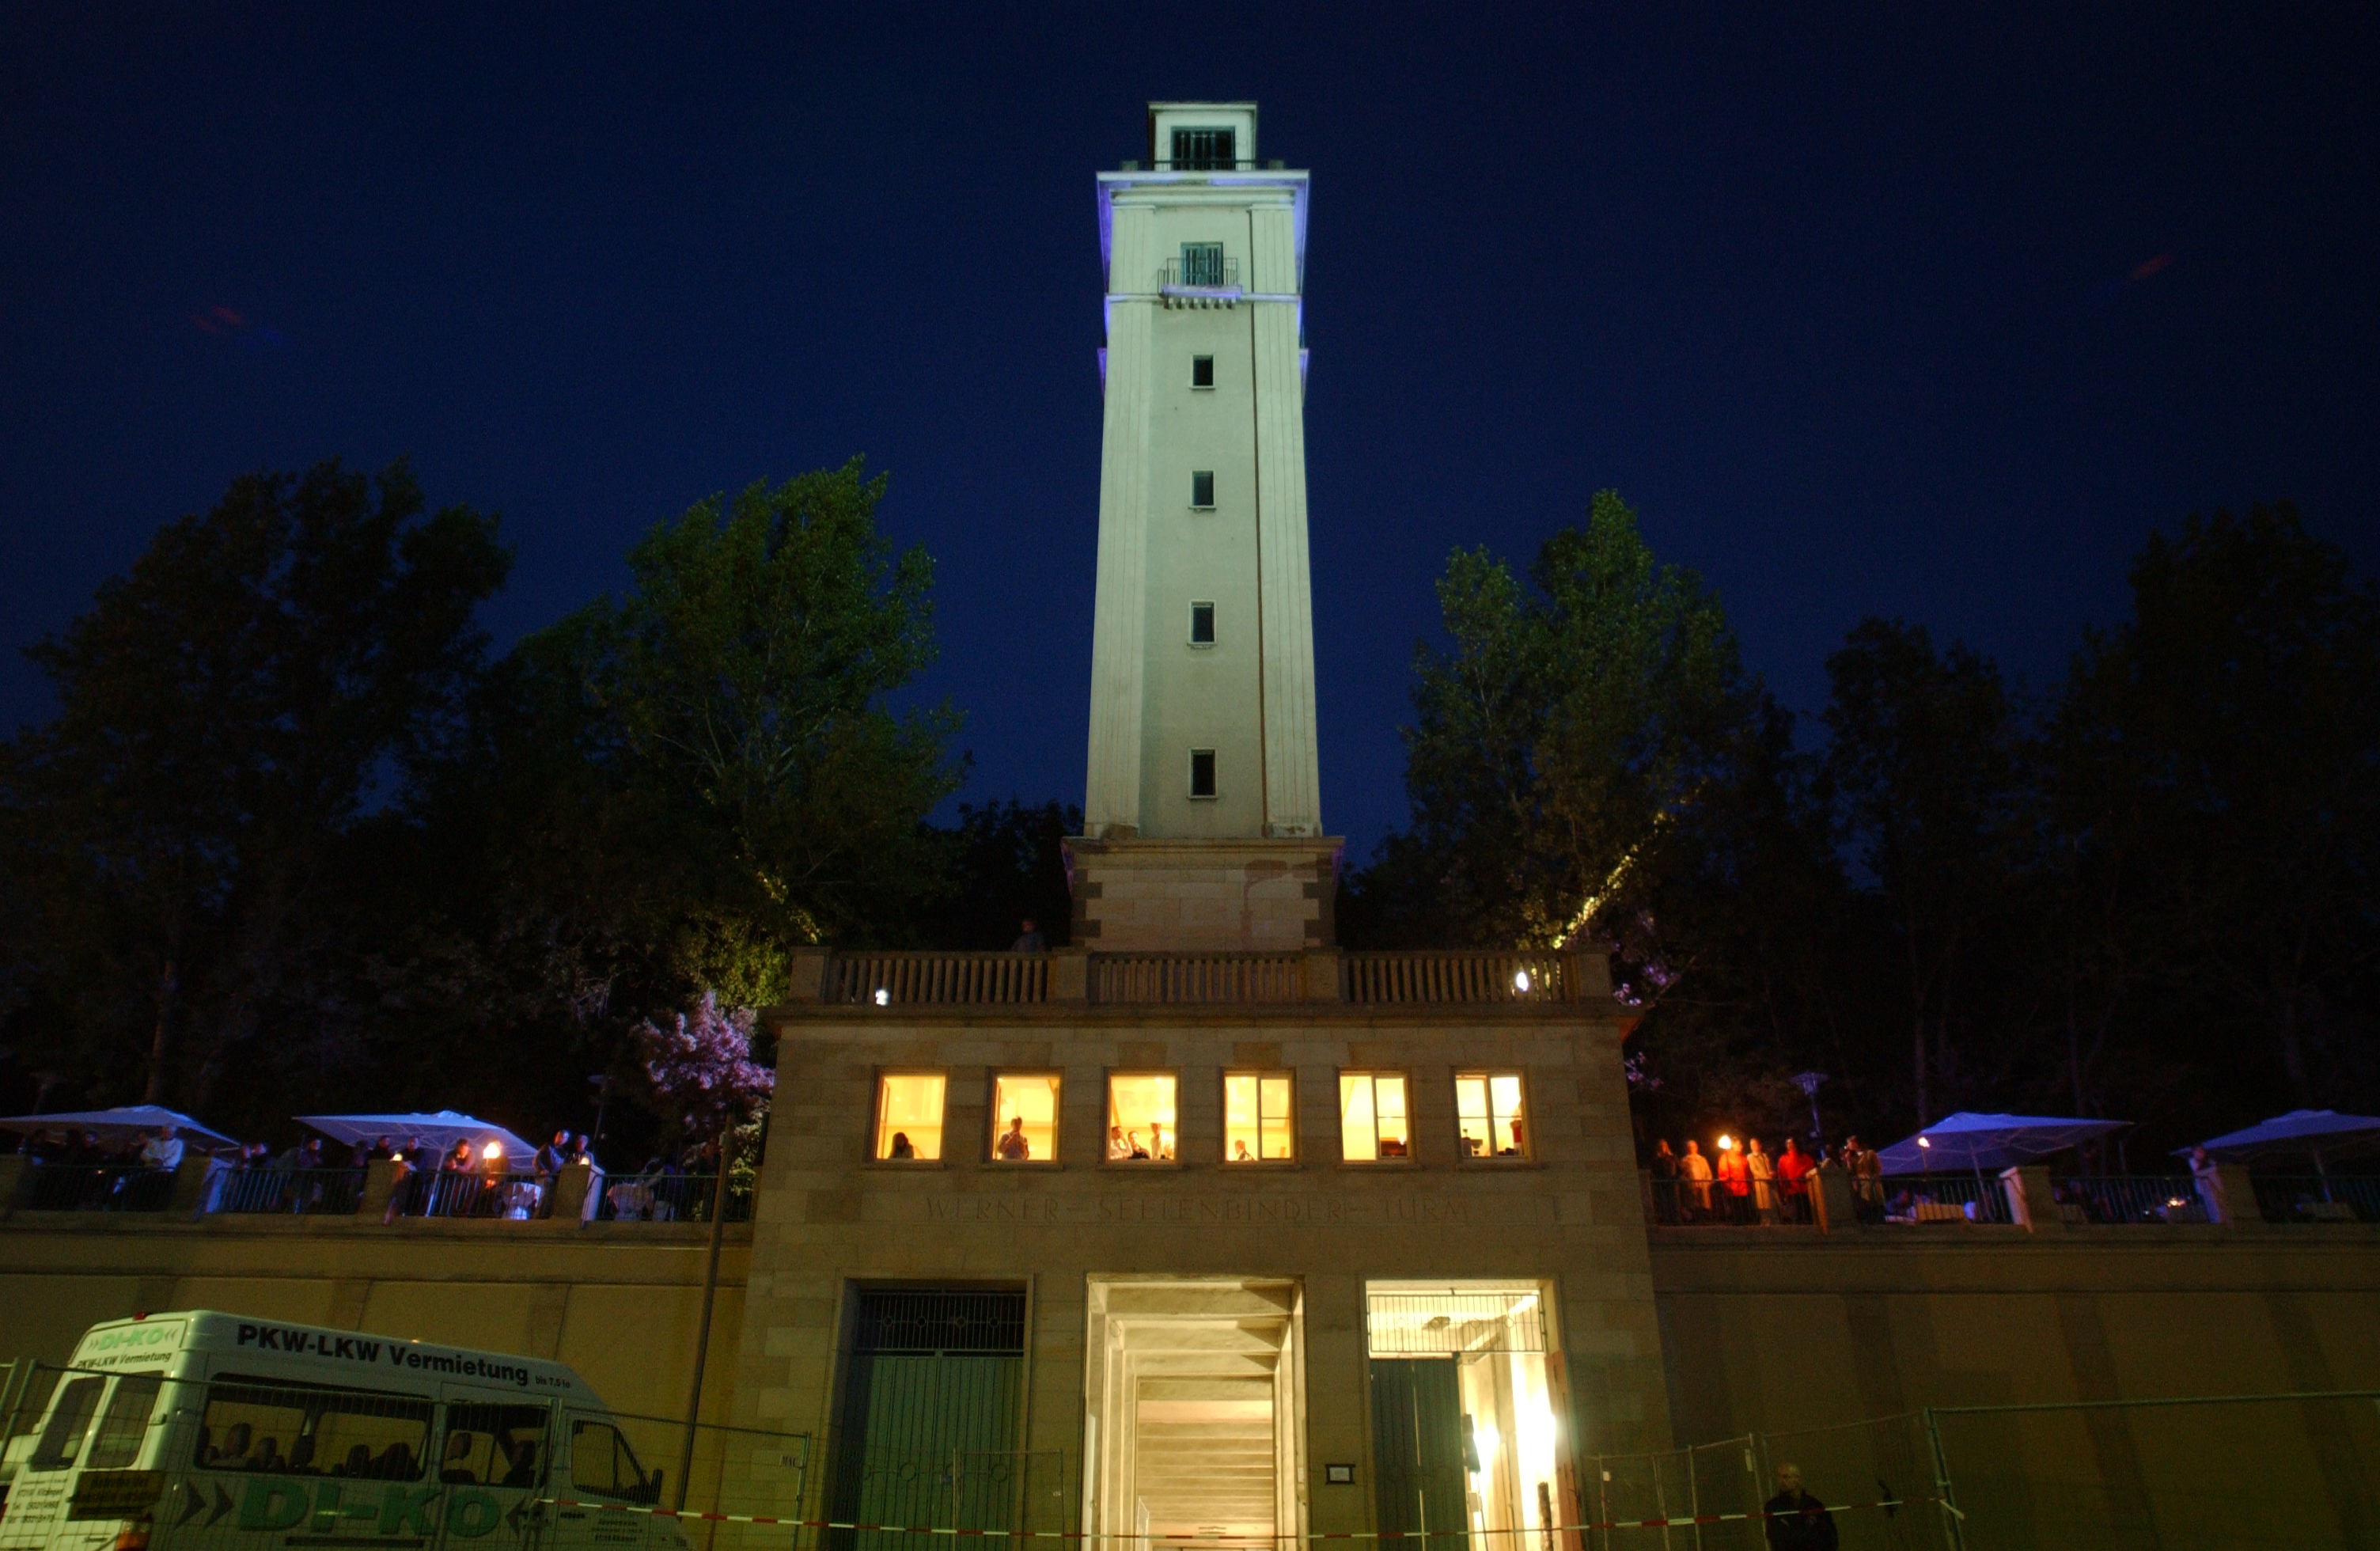 Glockenturm der Festwiese Leipzig bei Nacht.